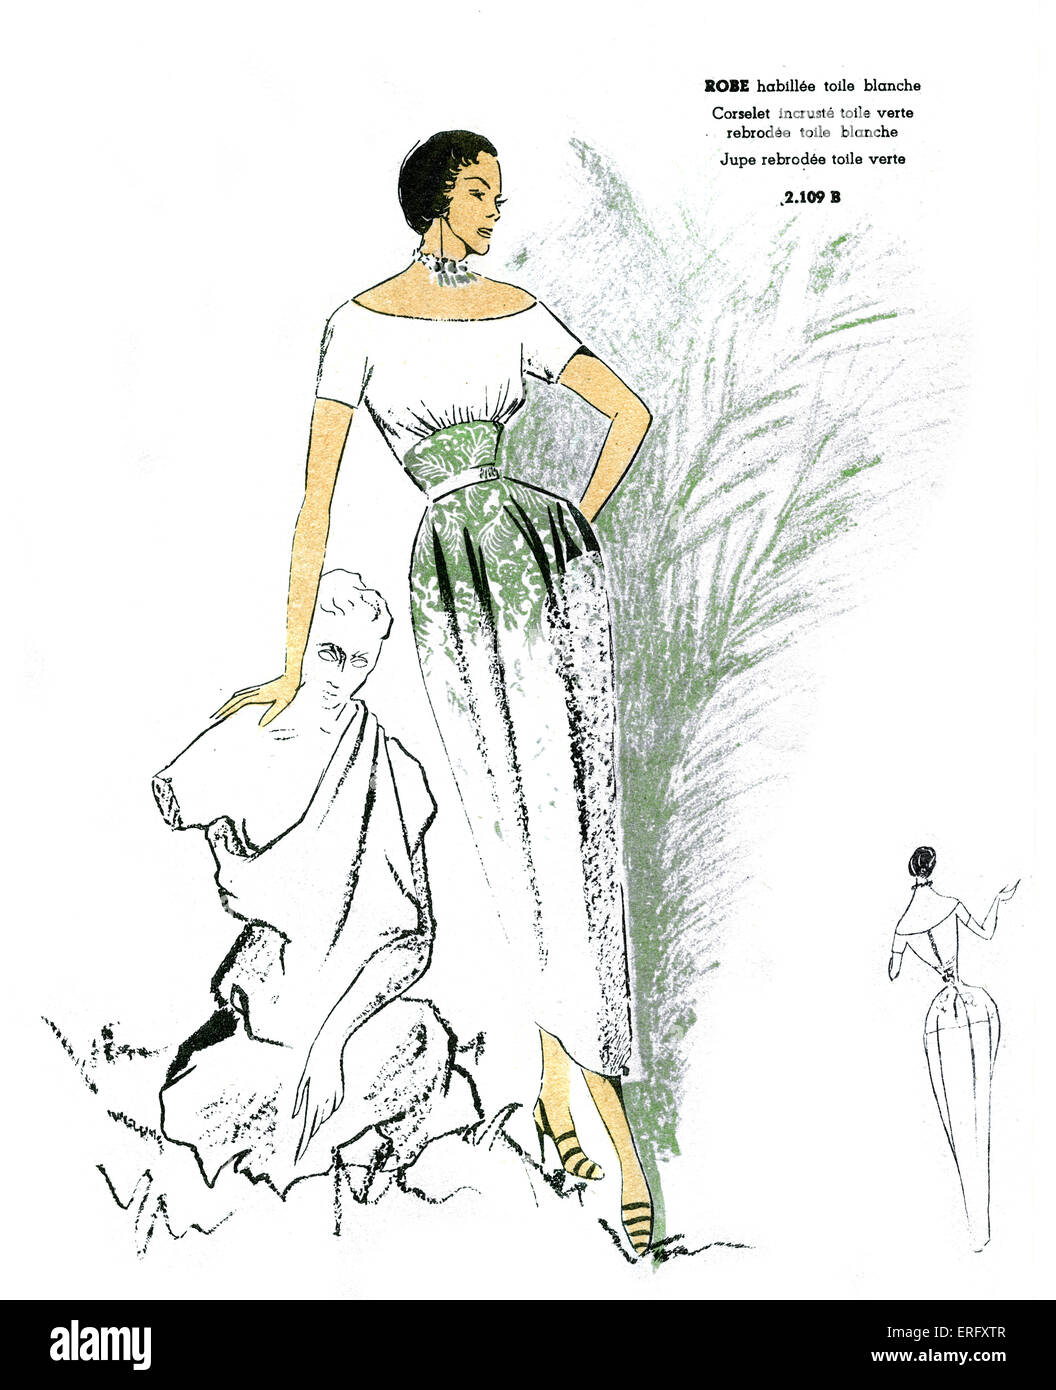 Moda francese, ricamato in verde e bianco abito progettazione/ Robe habillée Toile blanche, rebrodée Toile blanche et verte. Per il Foto Stock